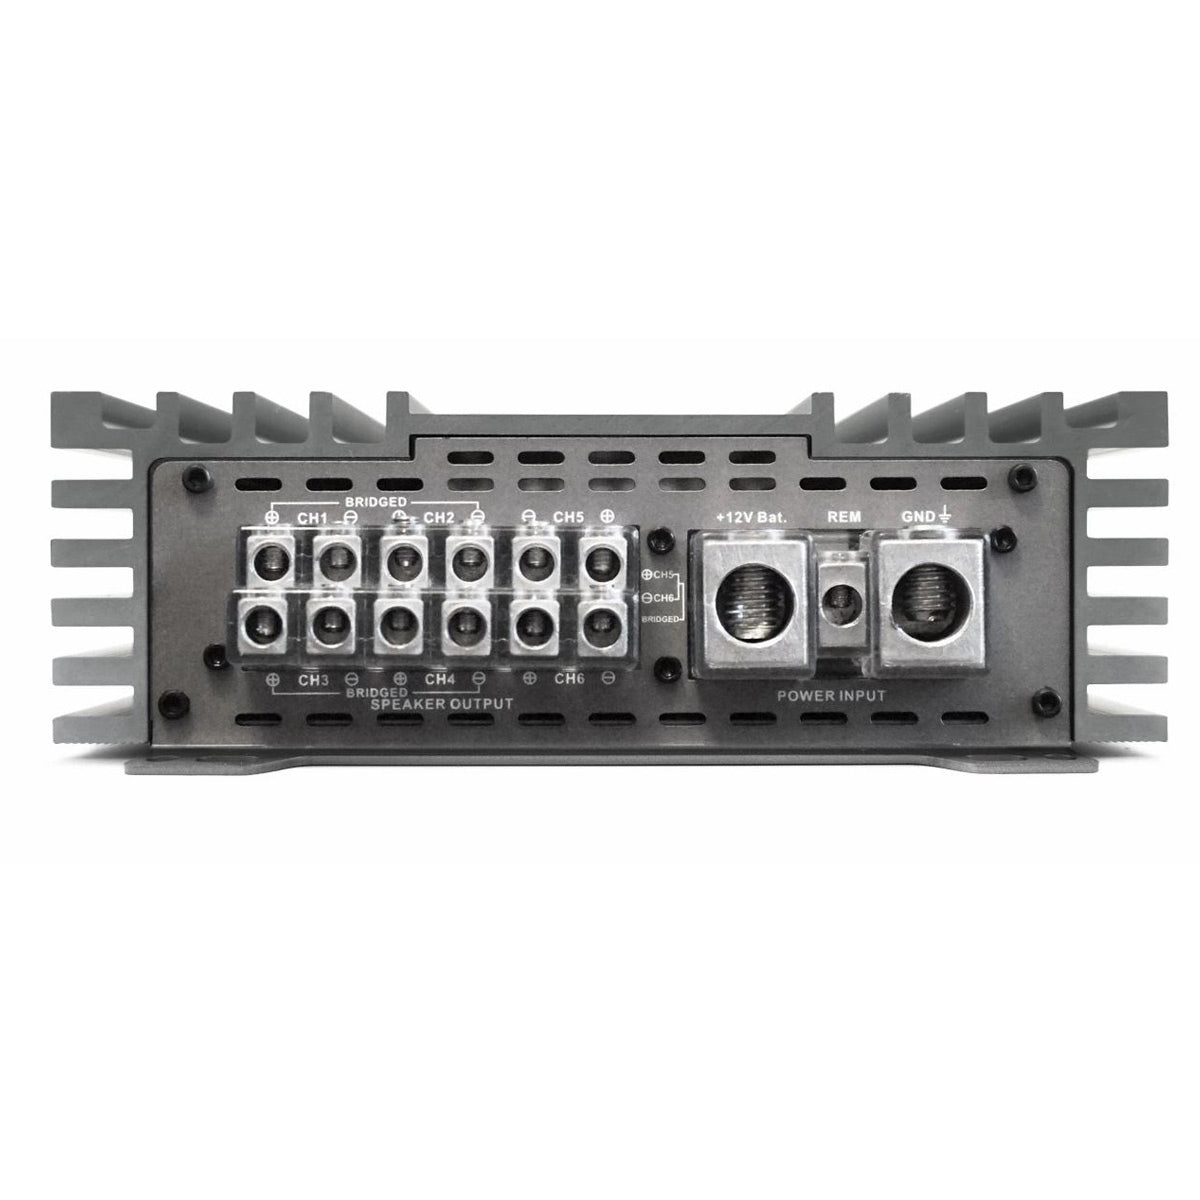 Zapco Z-150.6 II 6-Channel 1650-Watt Class AB Amplifier